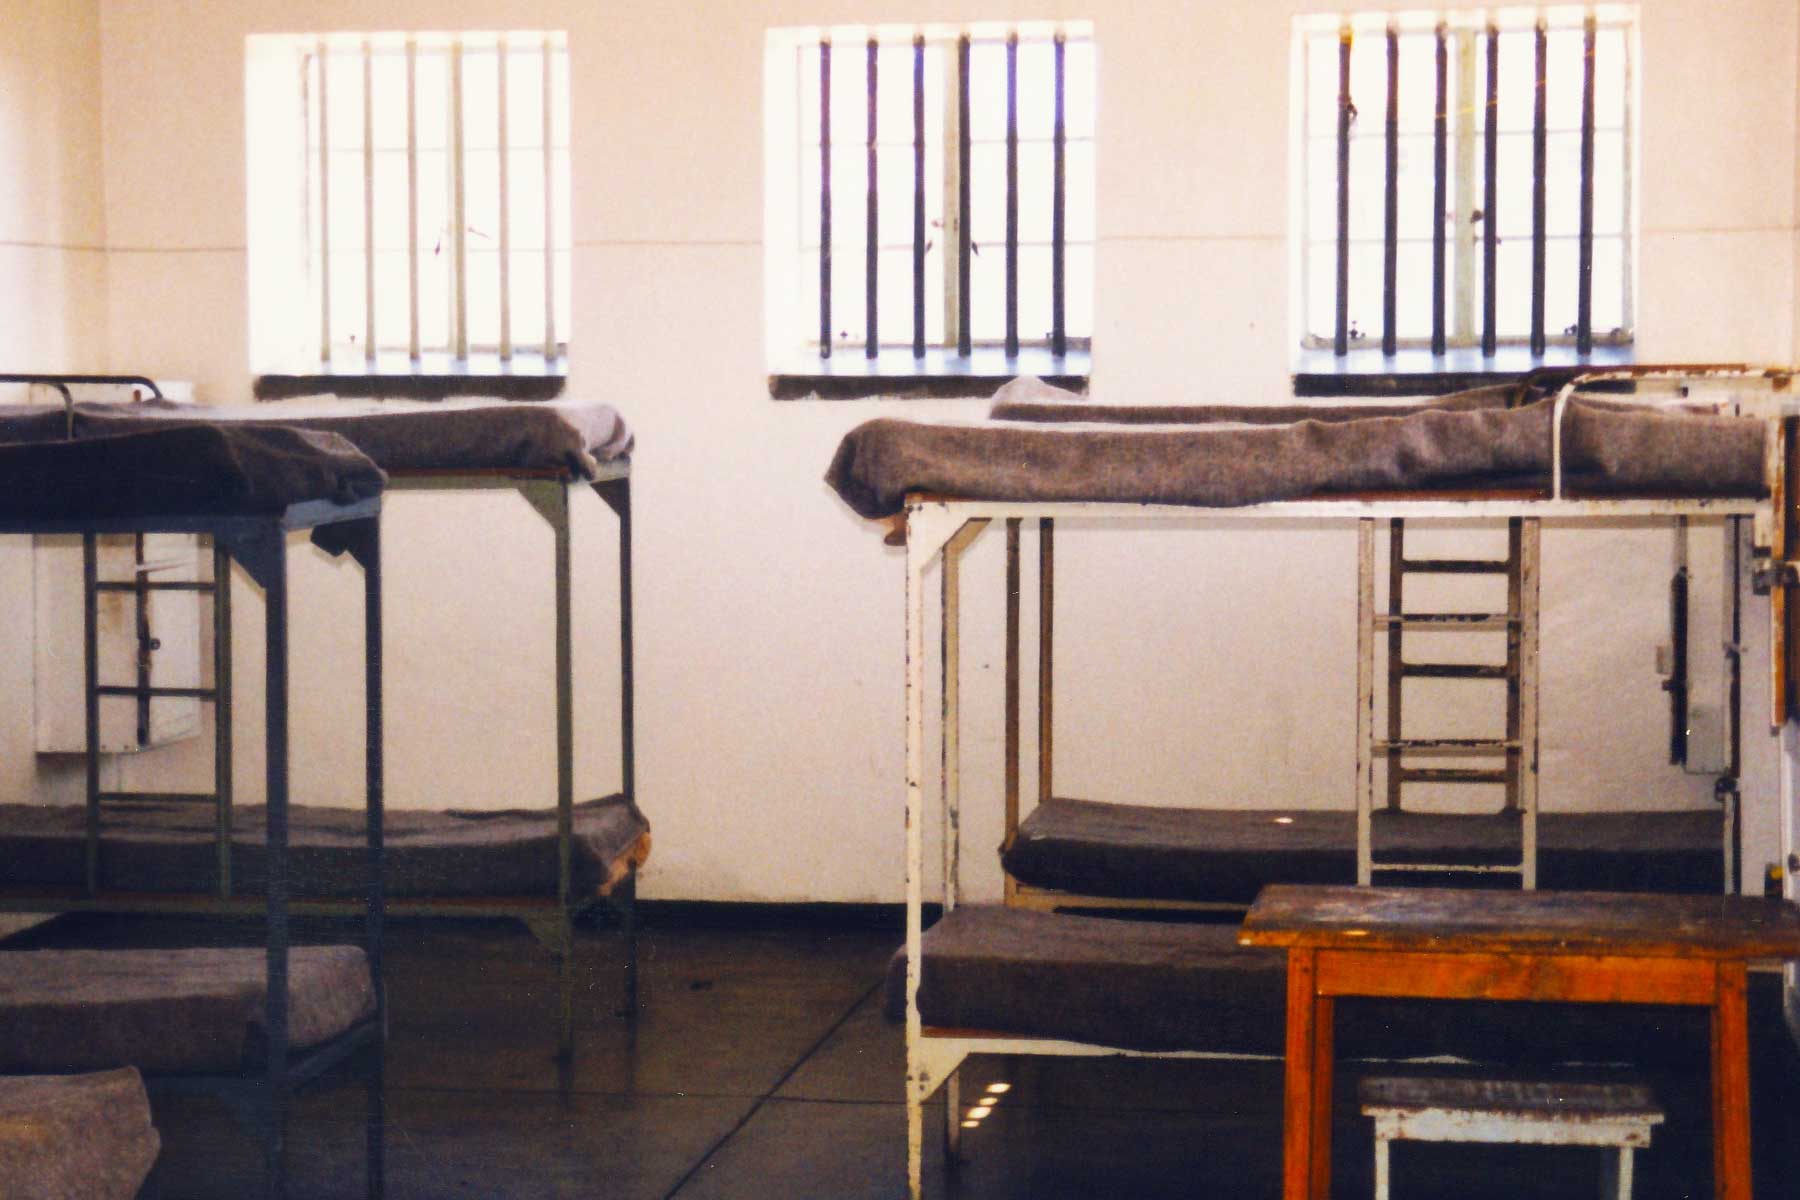 Nelson Mandela - Prison Cell - Robin Island - Steven Andrew Martin - South Africa Photo Journal